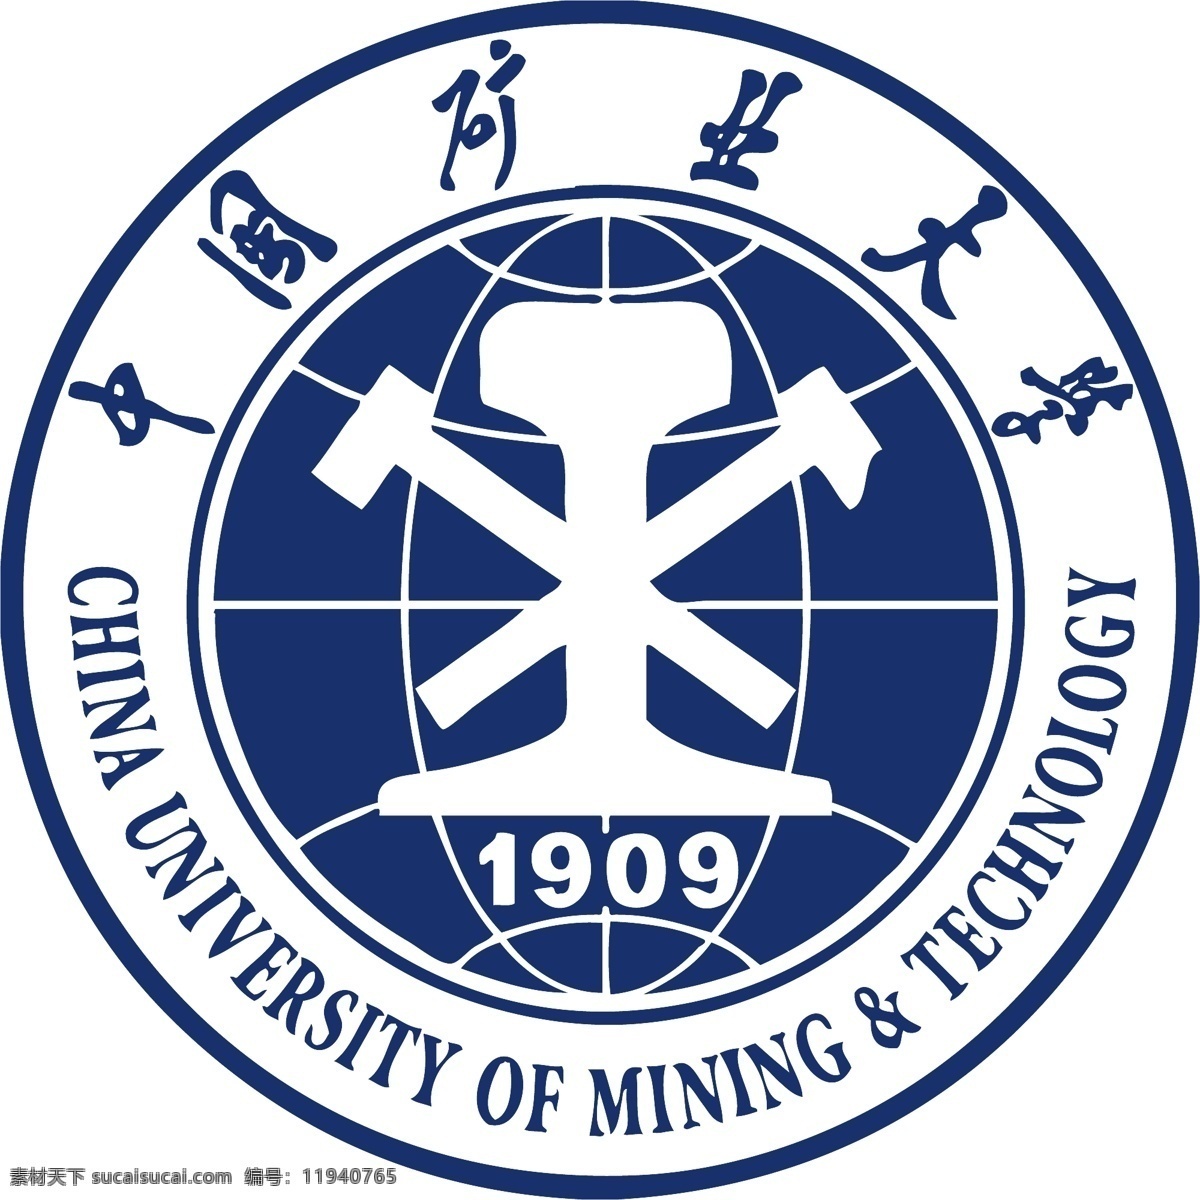 中国矿业大学 标志 矢量图 学校logo 校徽标志 其他矢量图